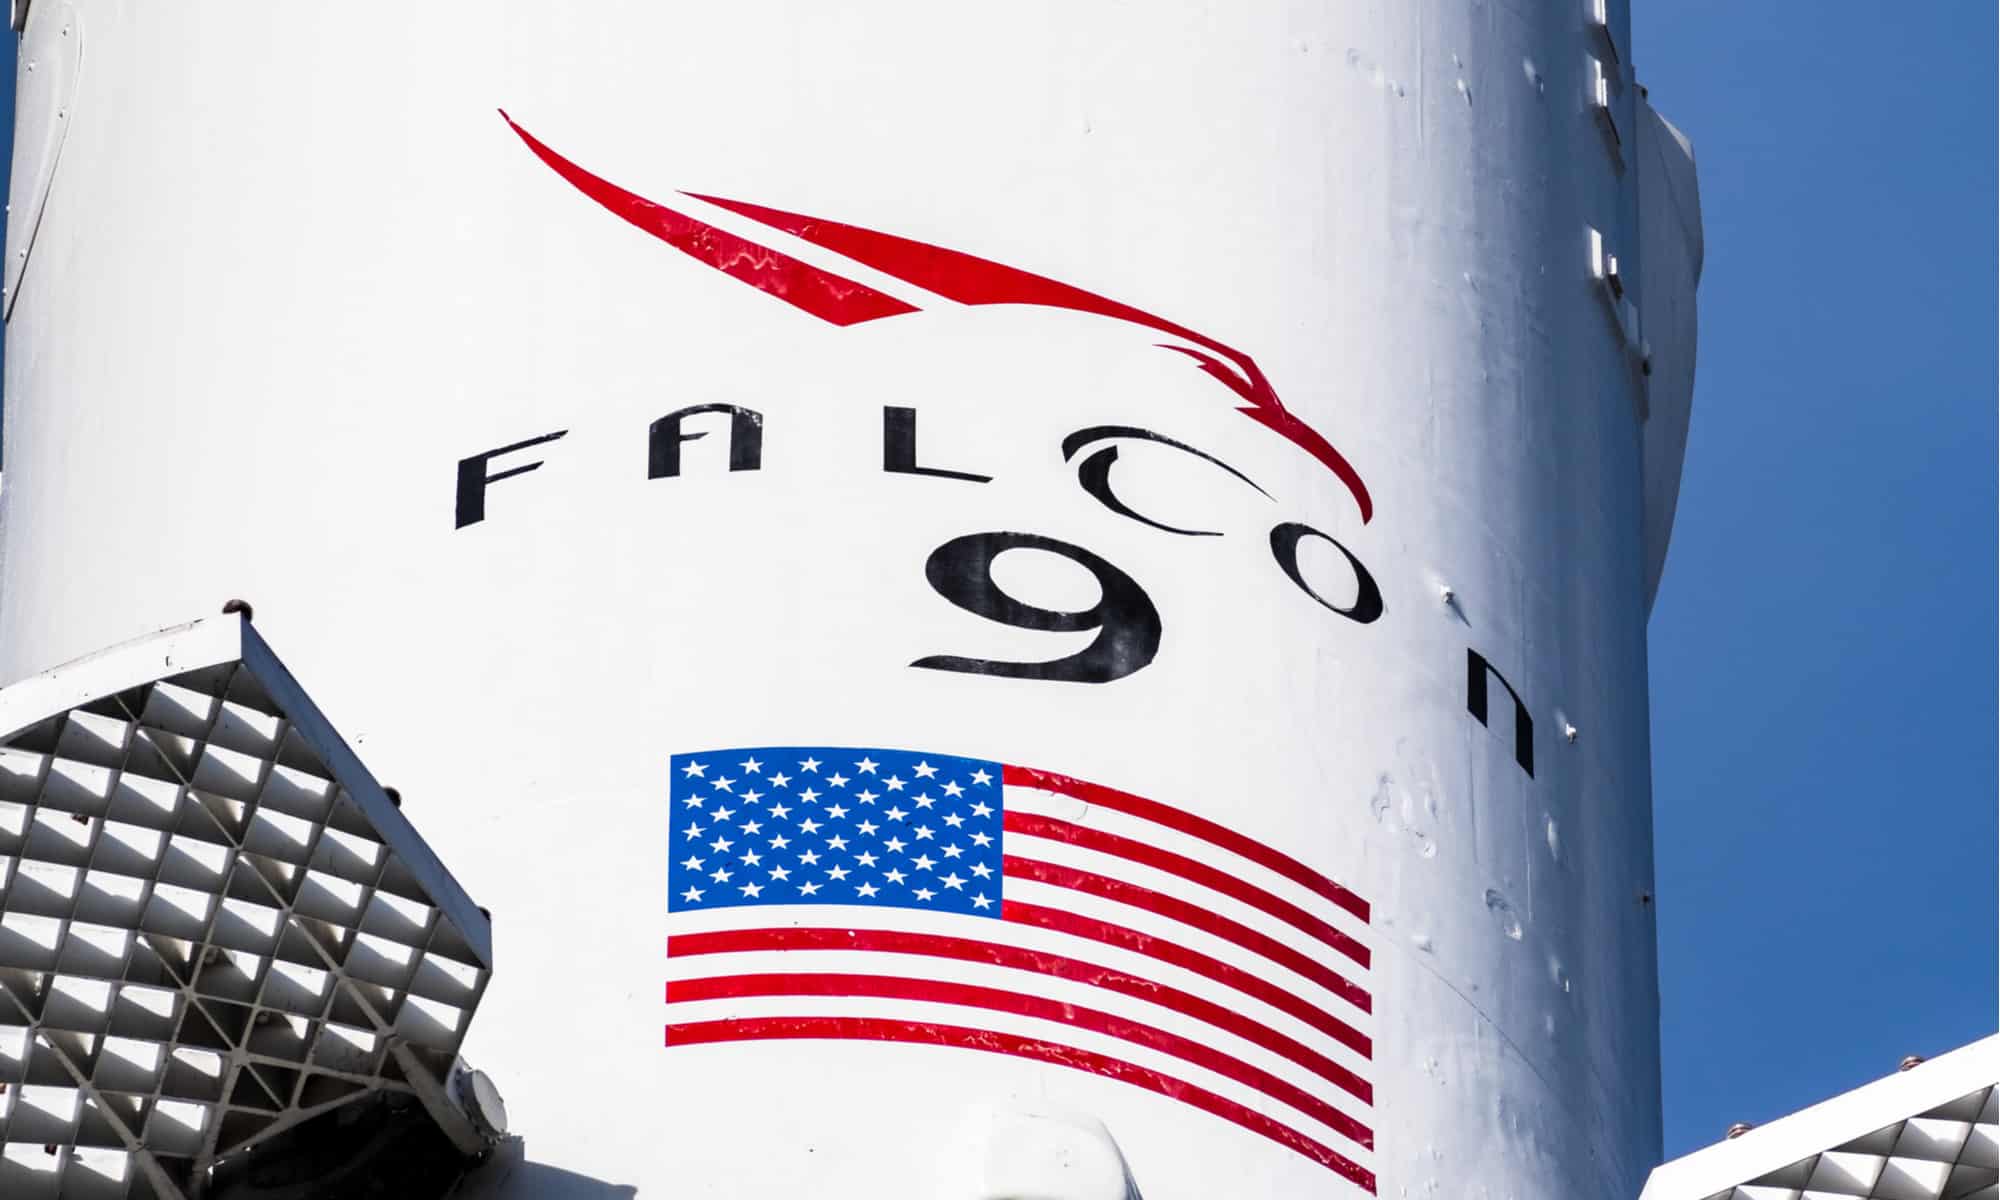 Falcon 9 logo